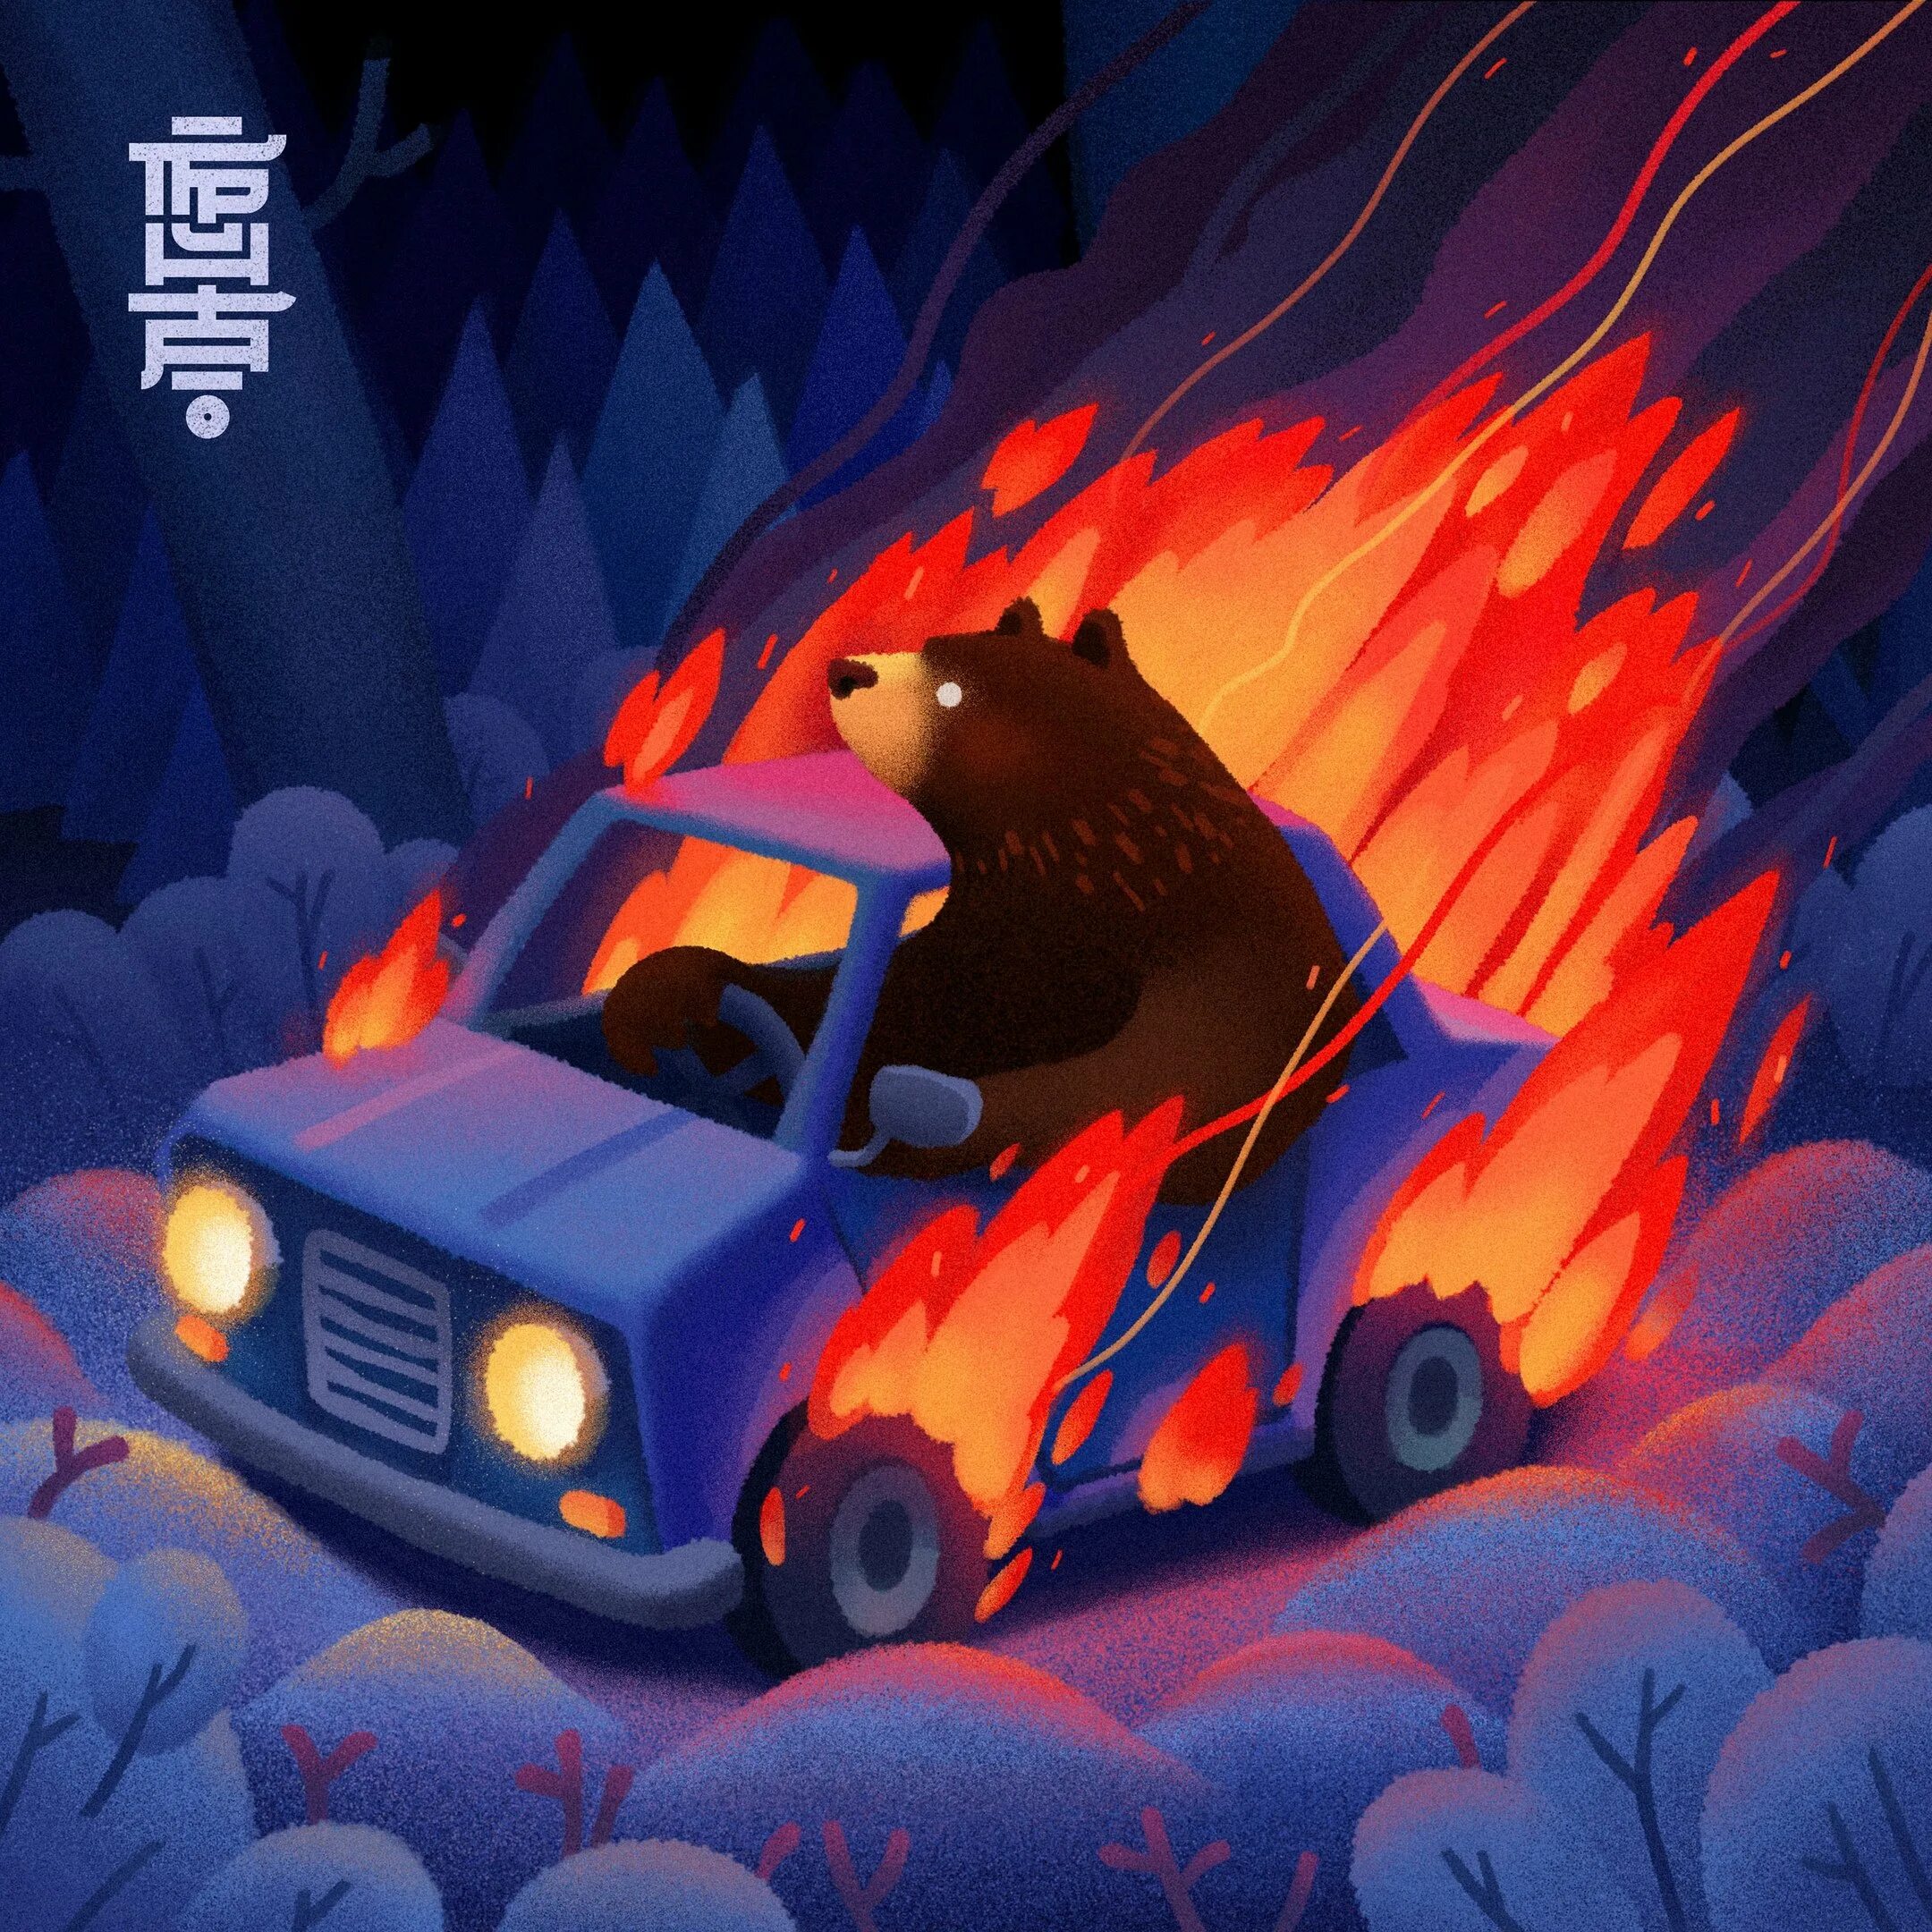 Идет медведь видит машина горит. Медведь и горящий автомобиль. Горящий медведь в машине. Медведь сгорел в машине. Медведь горит.